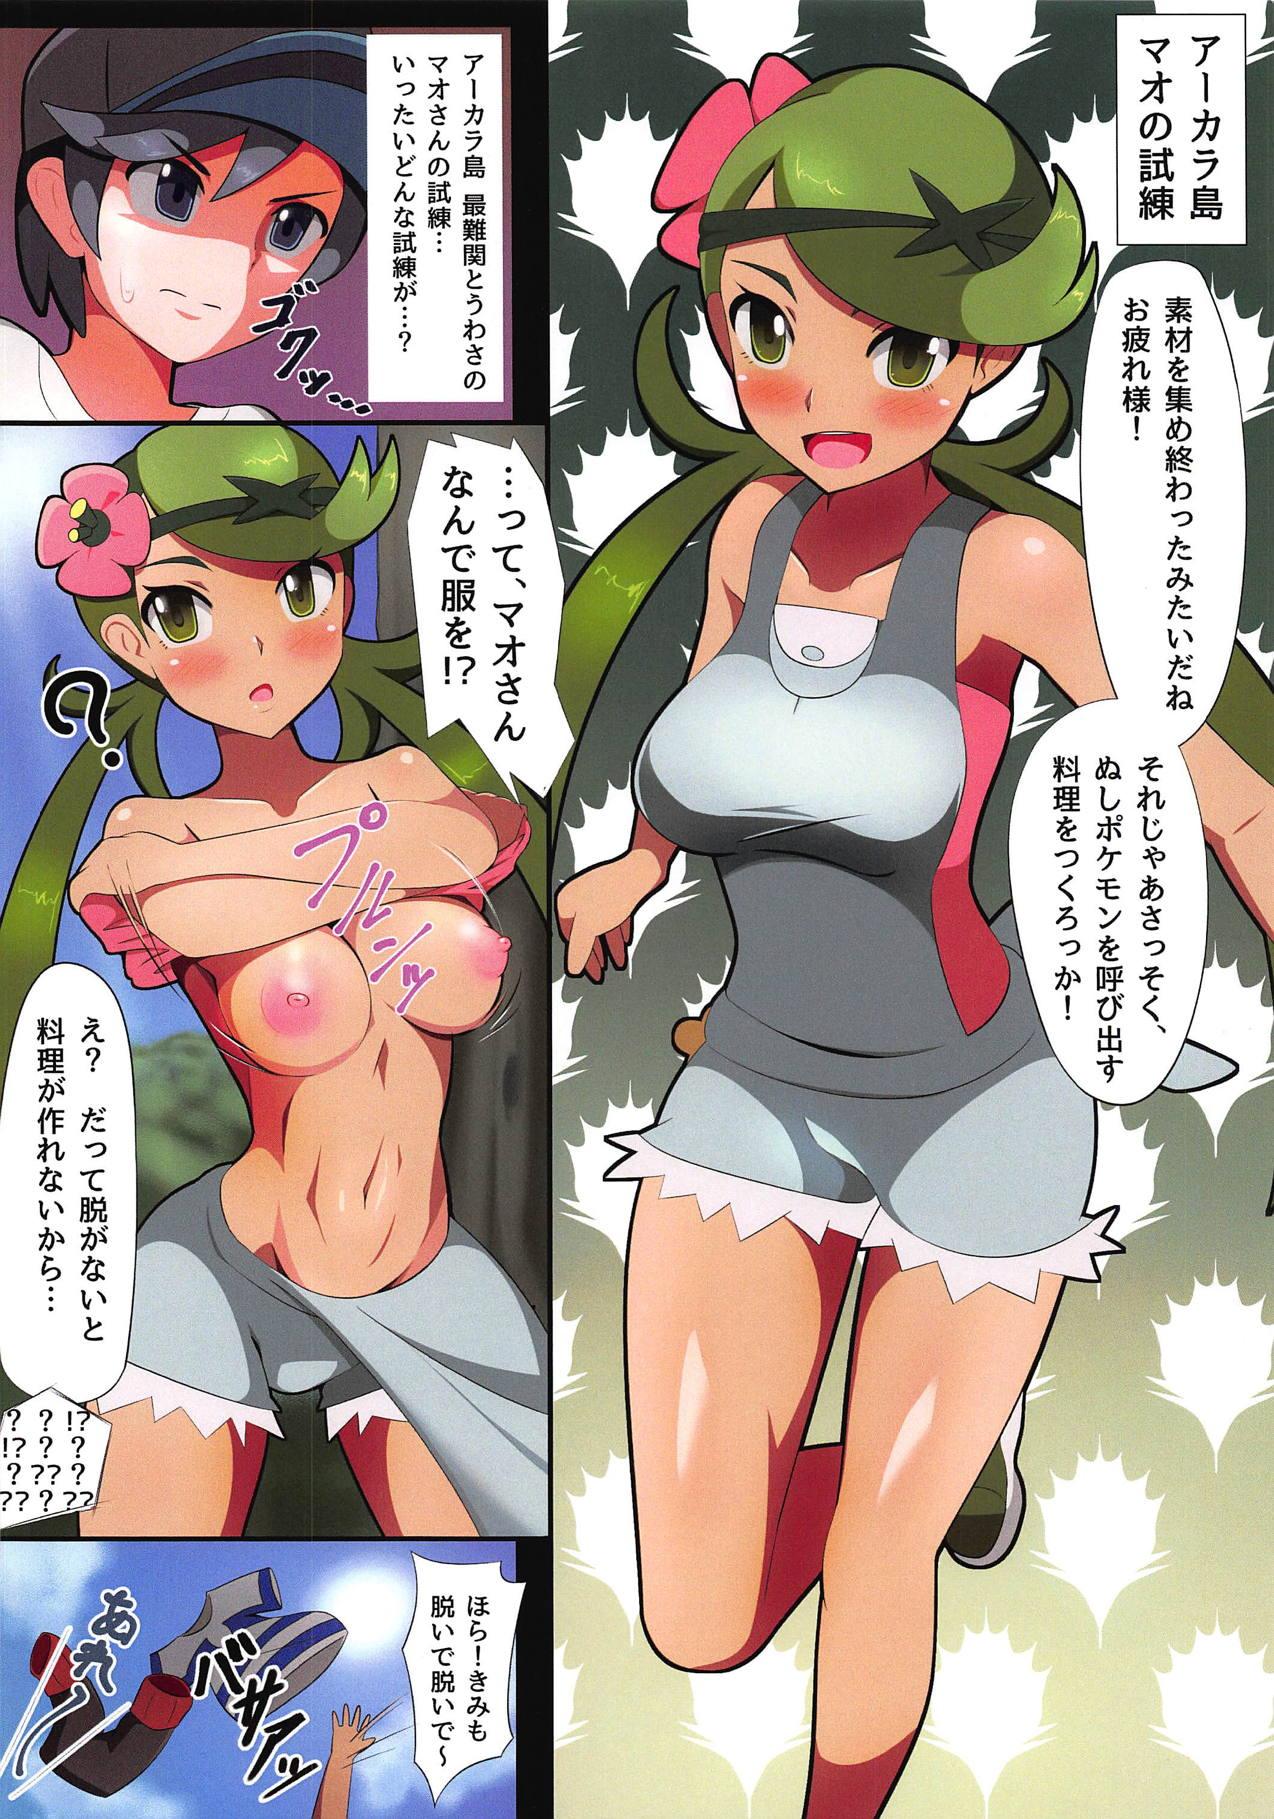 Culito TraColle - Trainers Collection - Pokemon Bikini - Page 3